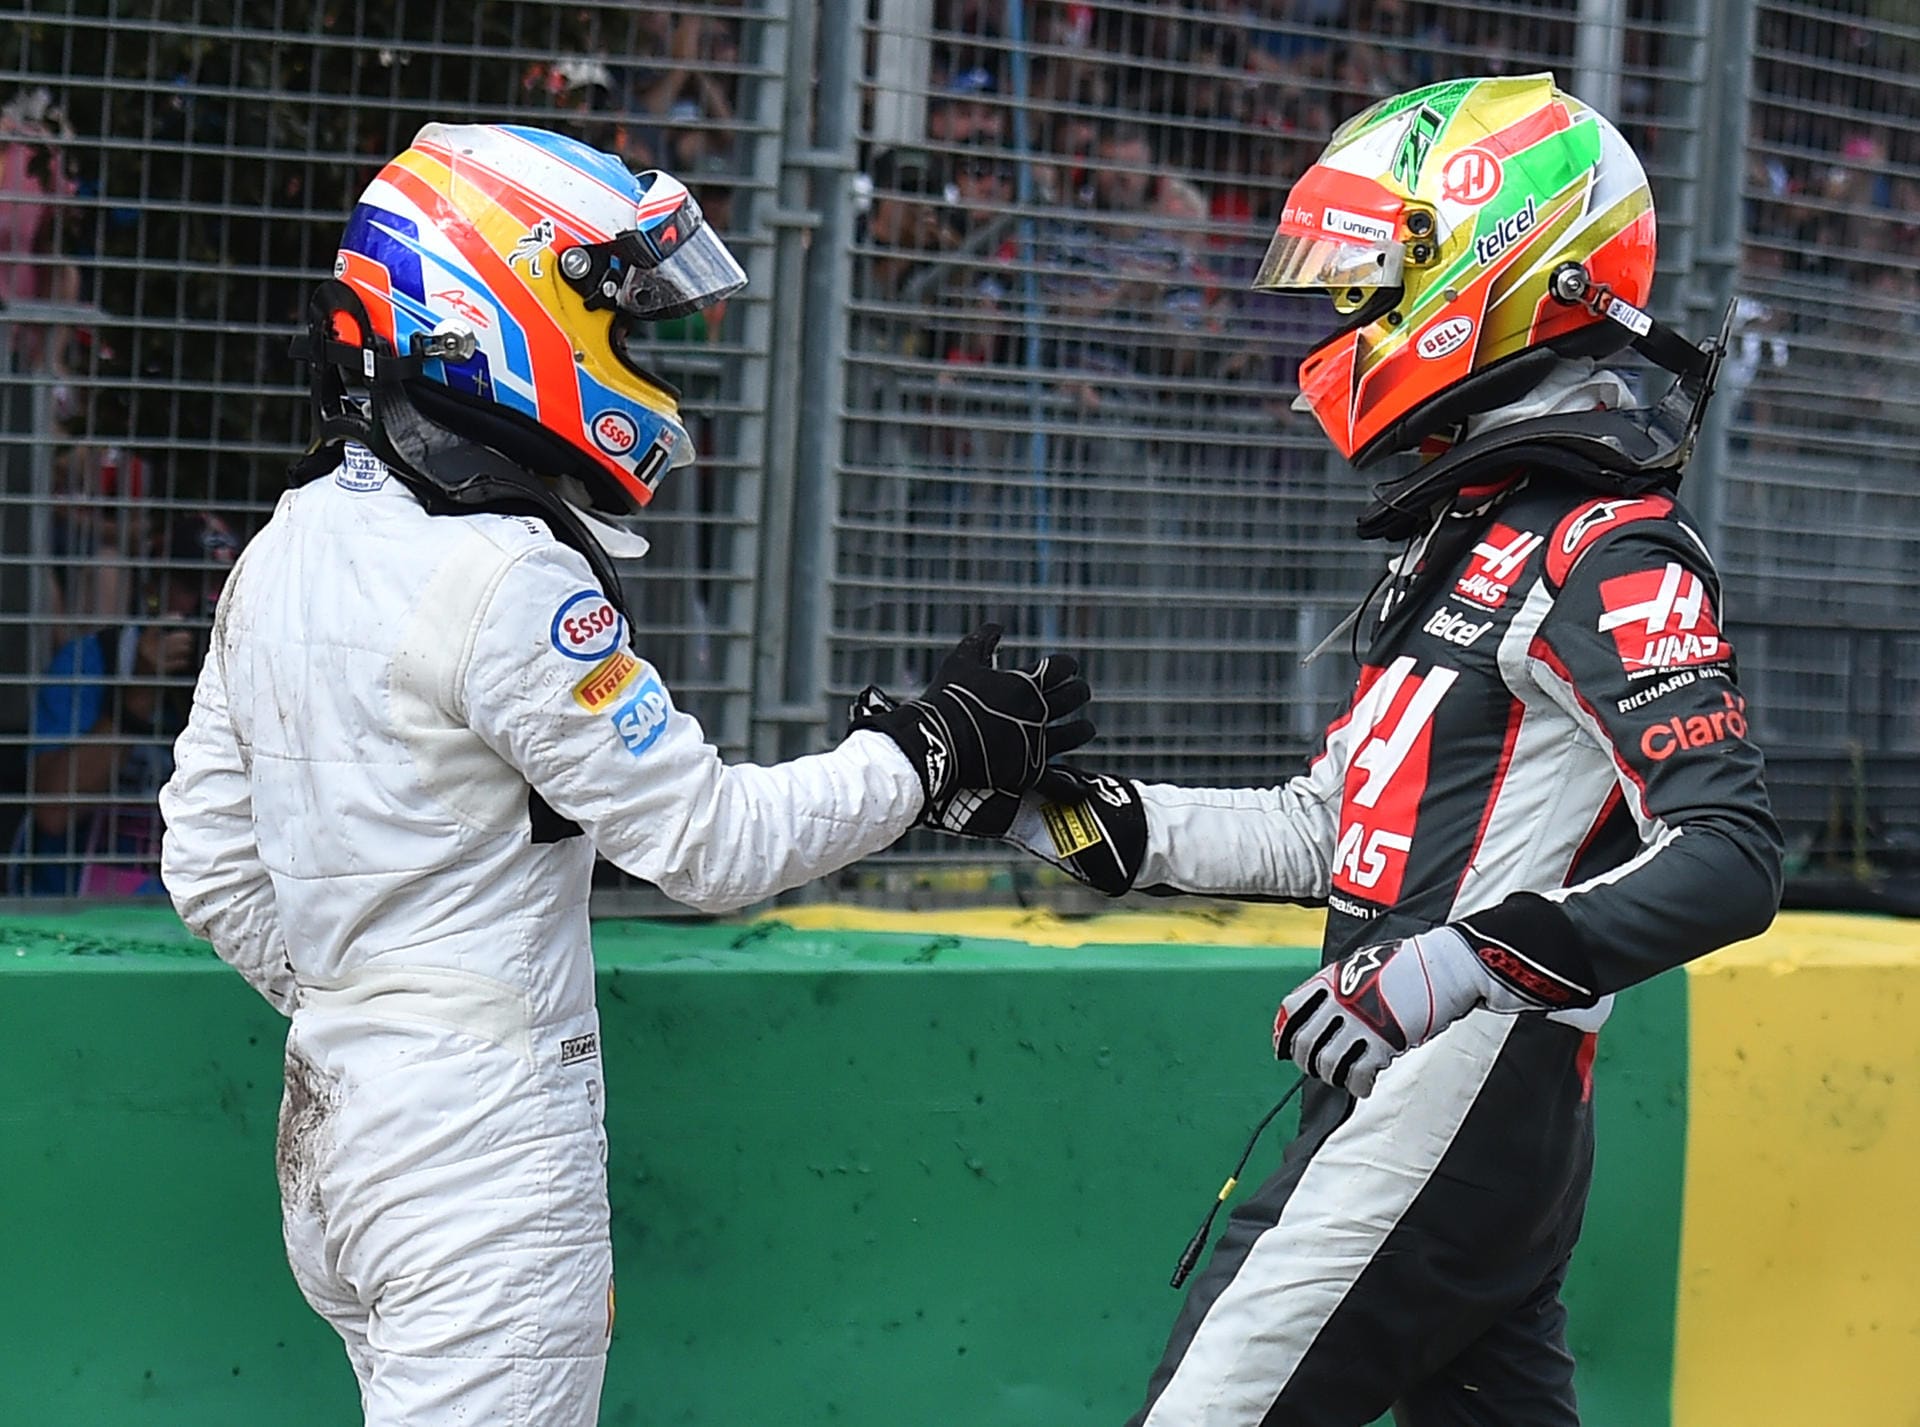 Esteban Gutierrez ging nach dem Unfall direkt zu Fernando Alonso um sich nach dessen Gesundheit zu erkundigen.